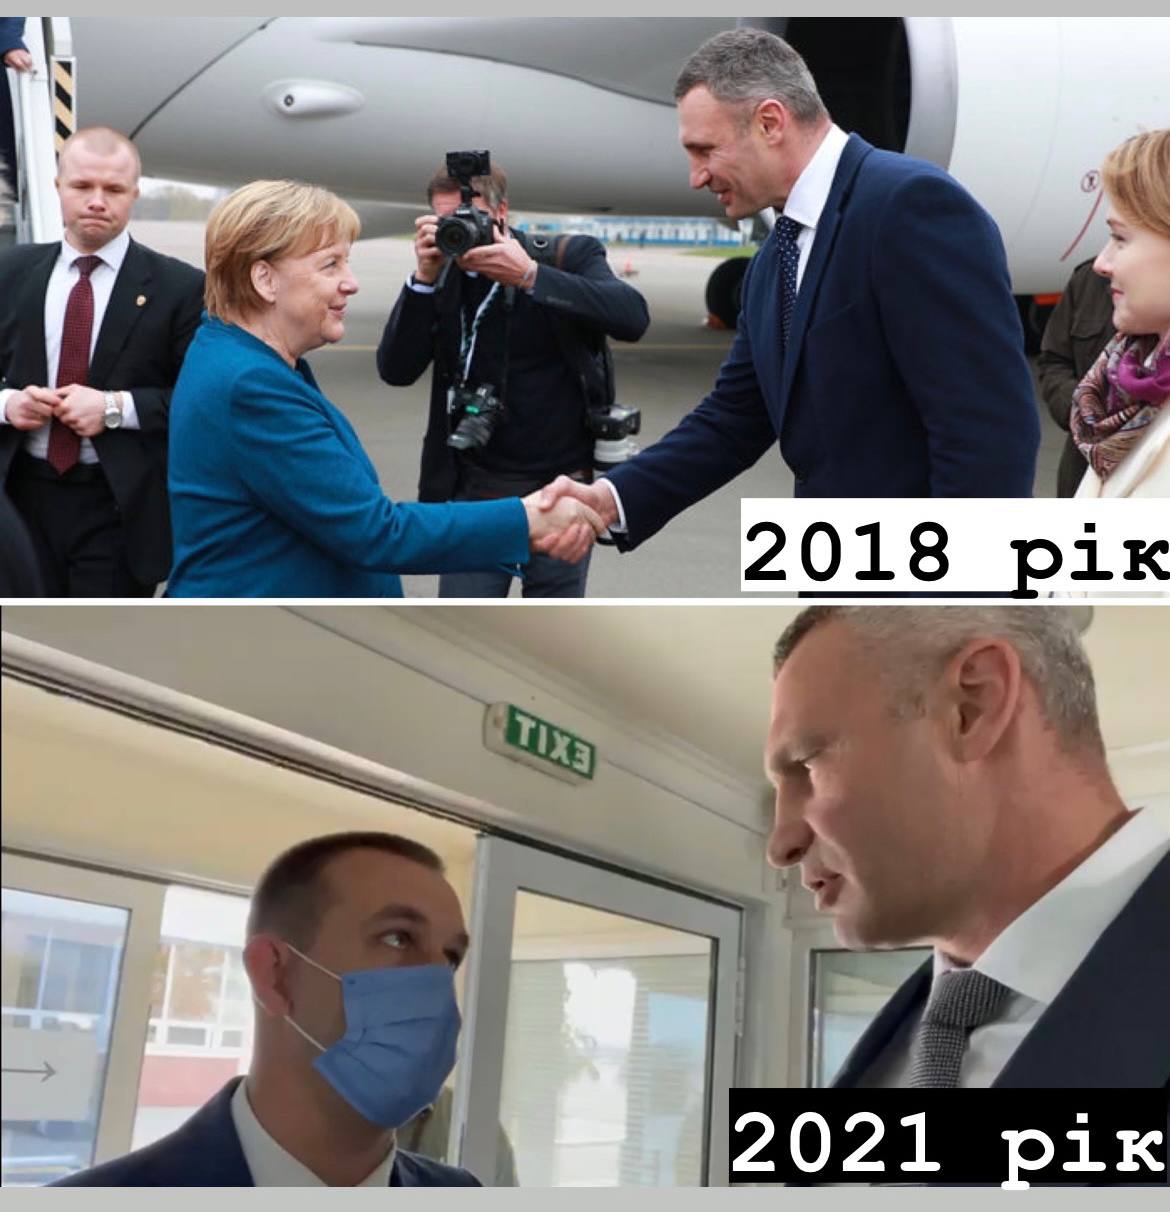 Кличко пожаловался, что его не пустили встретить Меркель в аэропорту. В ОП отреагировали